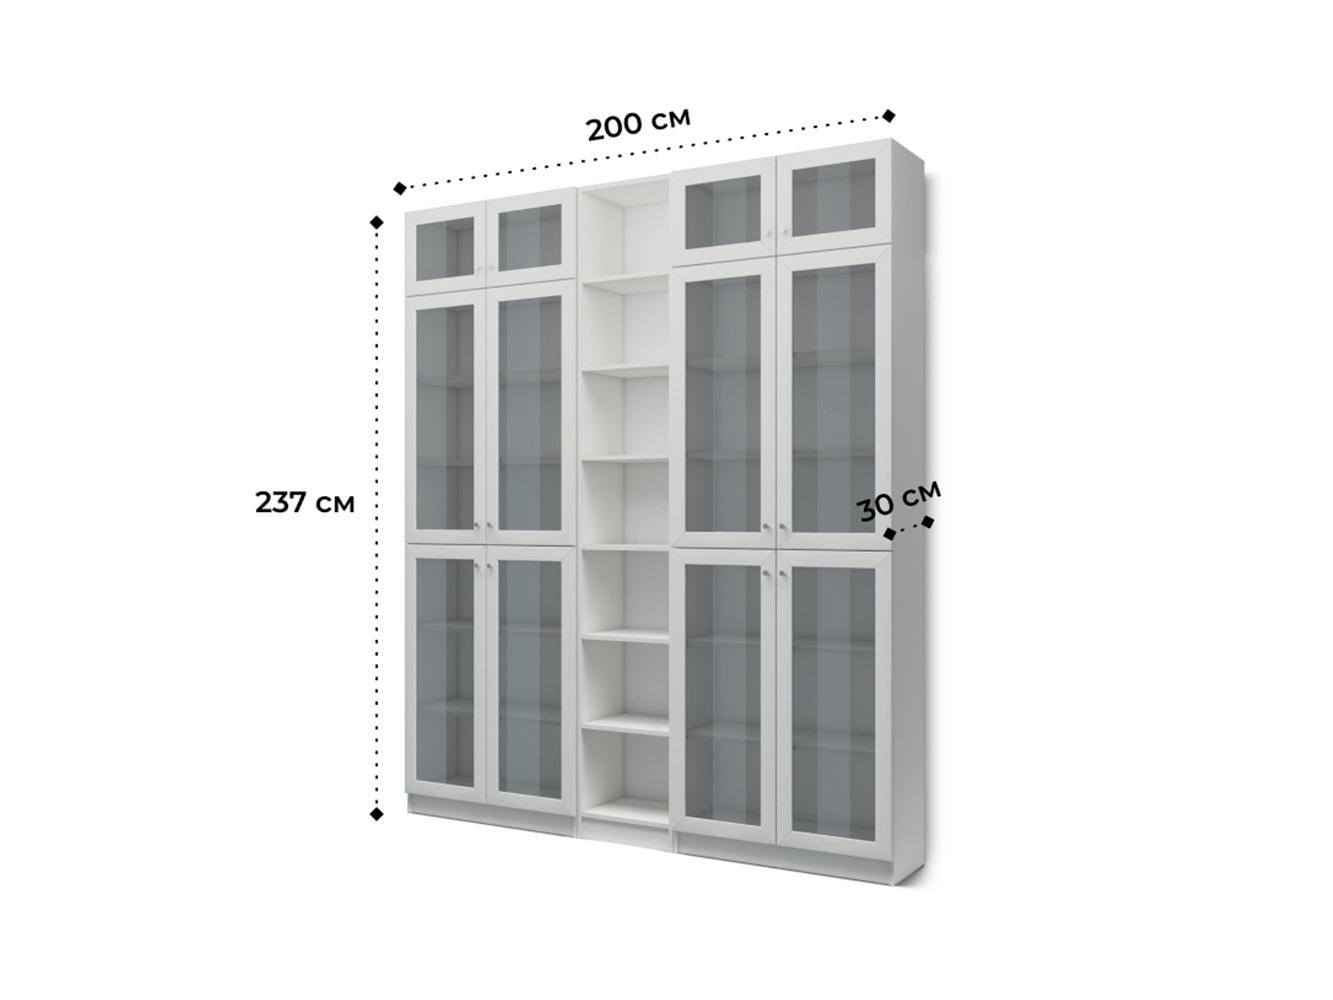  Книжный шкаф Билли 348 grey ИКЕА (IKEA) изображение товара